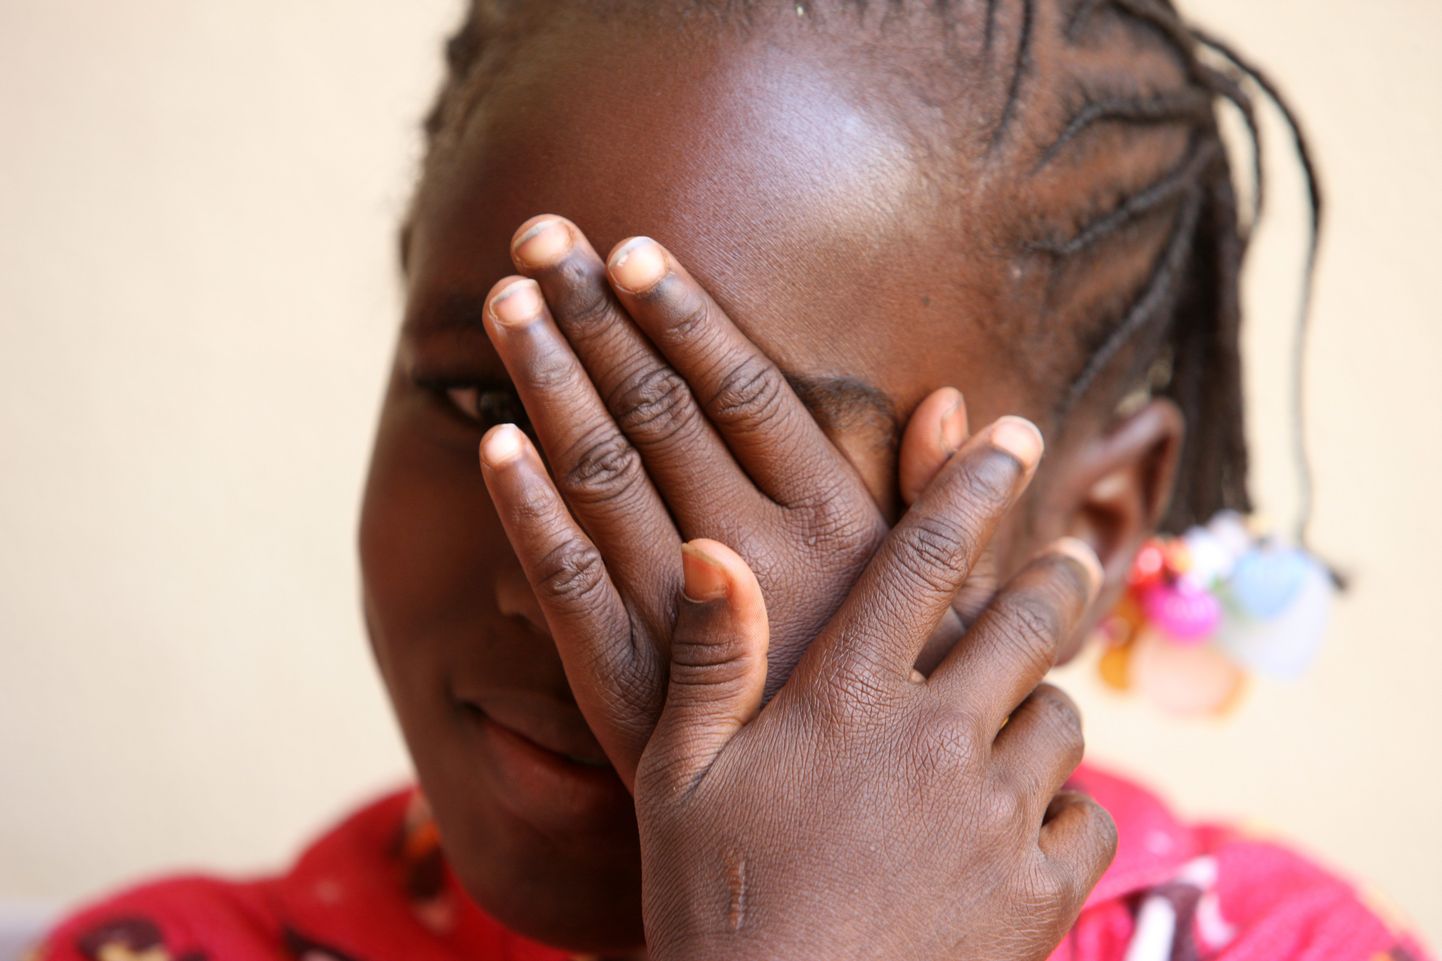 И хотя мировая общественность много лет борется за прекращение женского обрезования в Африке, в мире проживает более 200 миллионов обрезанных женщин и девочек.